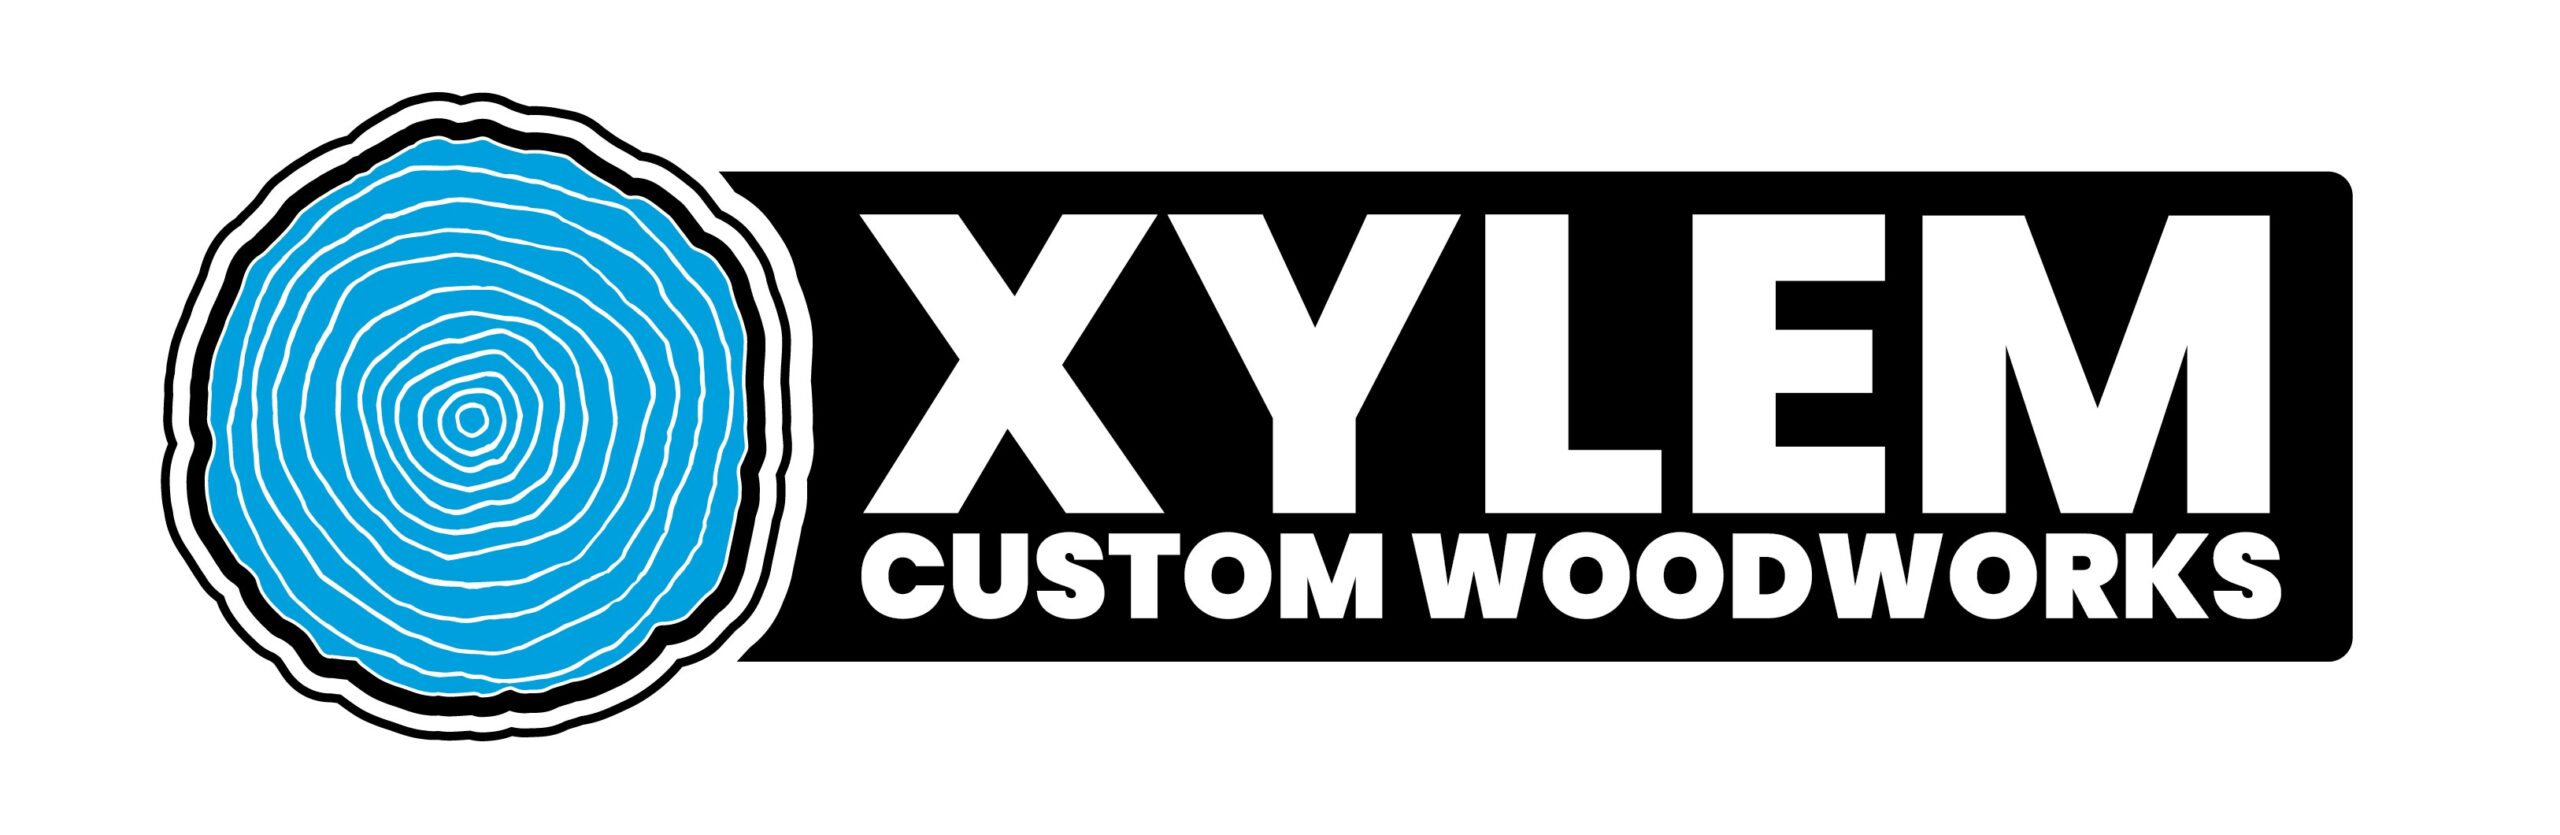 Xylem, Inc